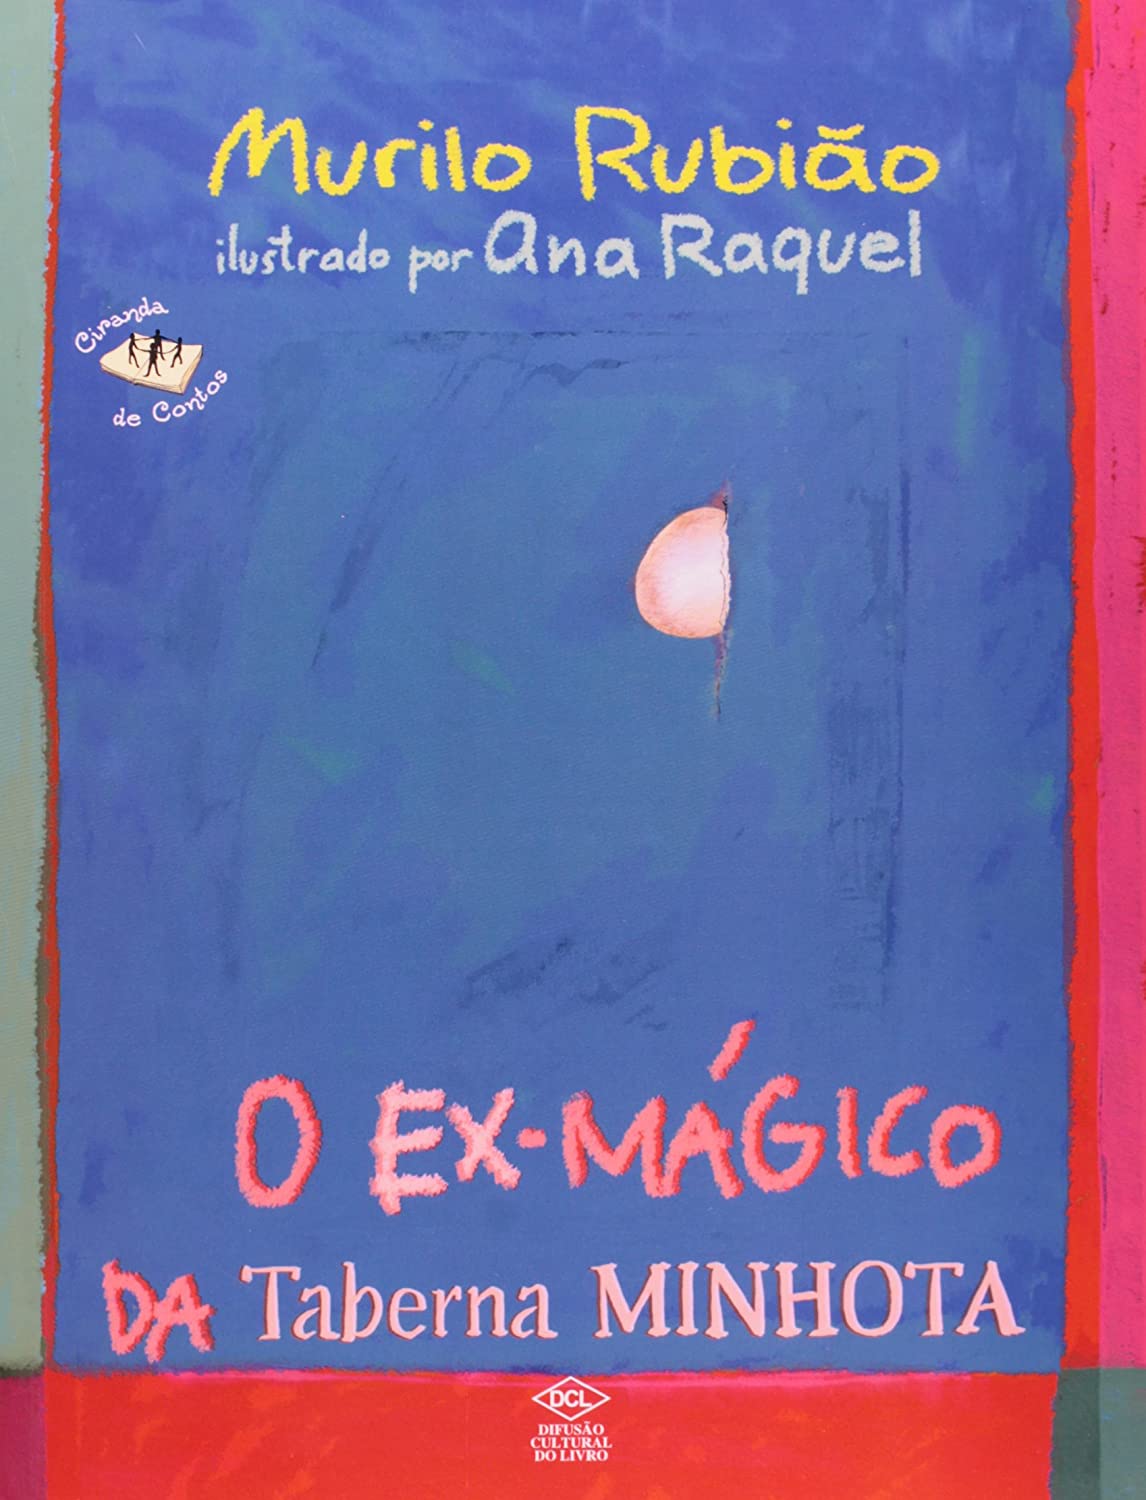 O ex-mágico da Taberna Minhota – ilustrado por Ana Raquel (2004)